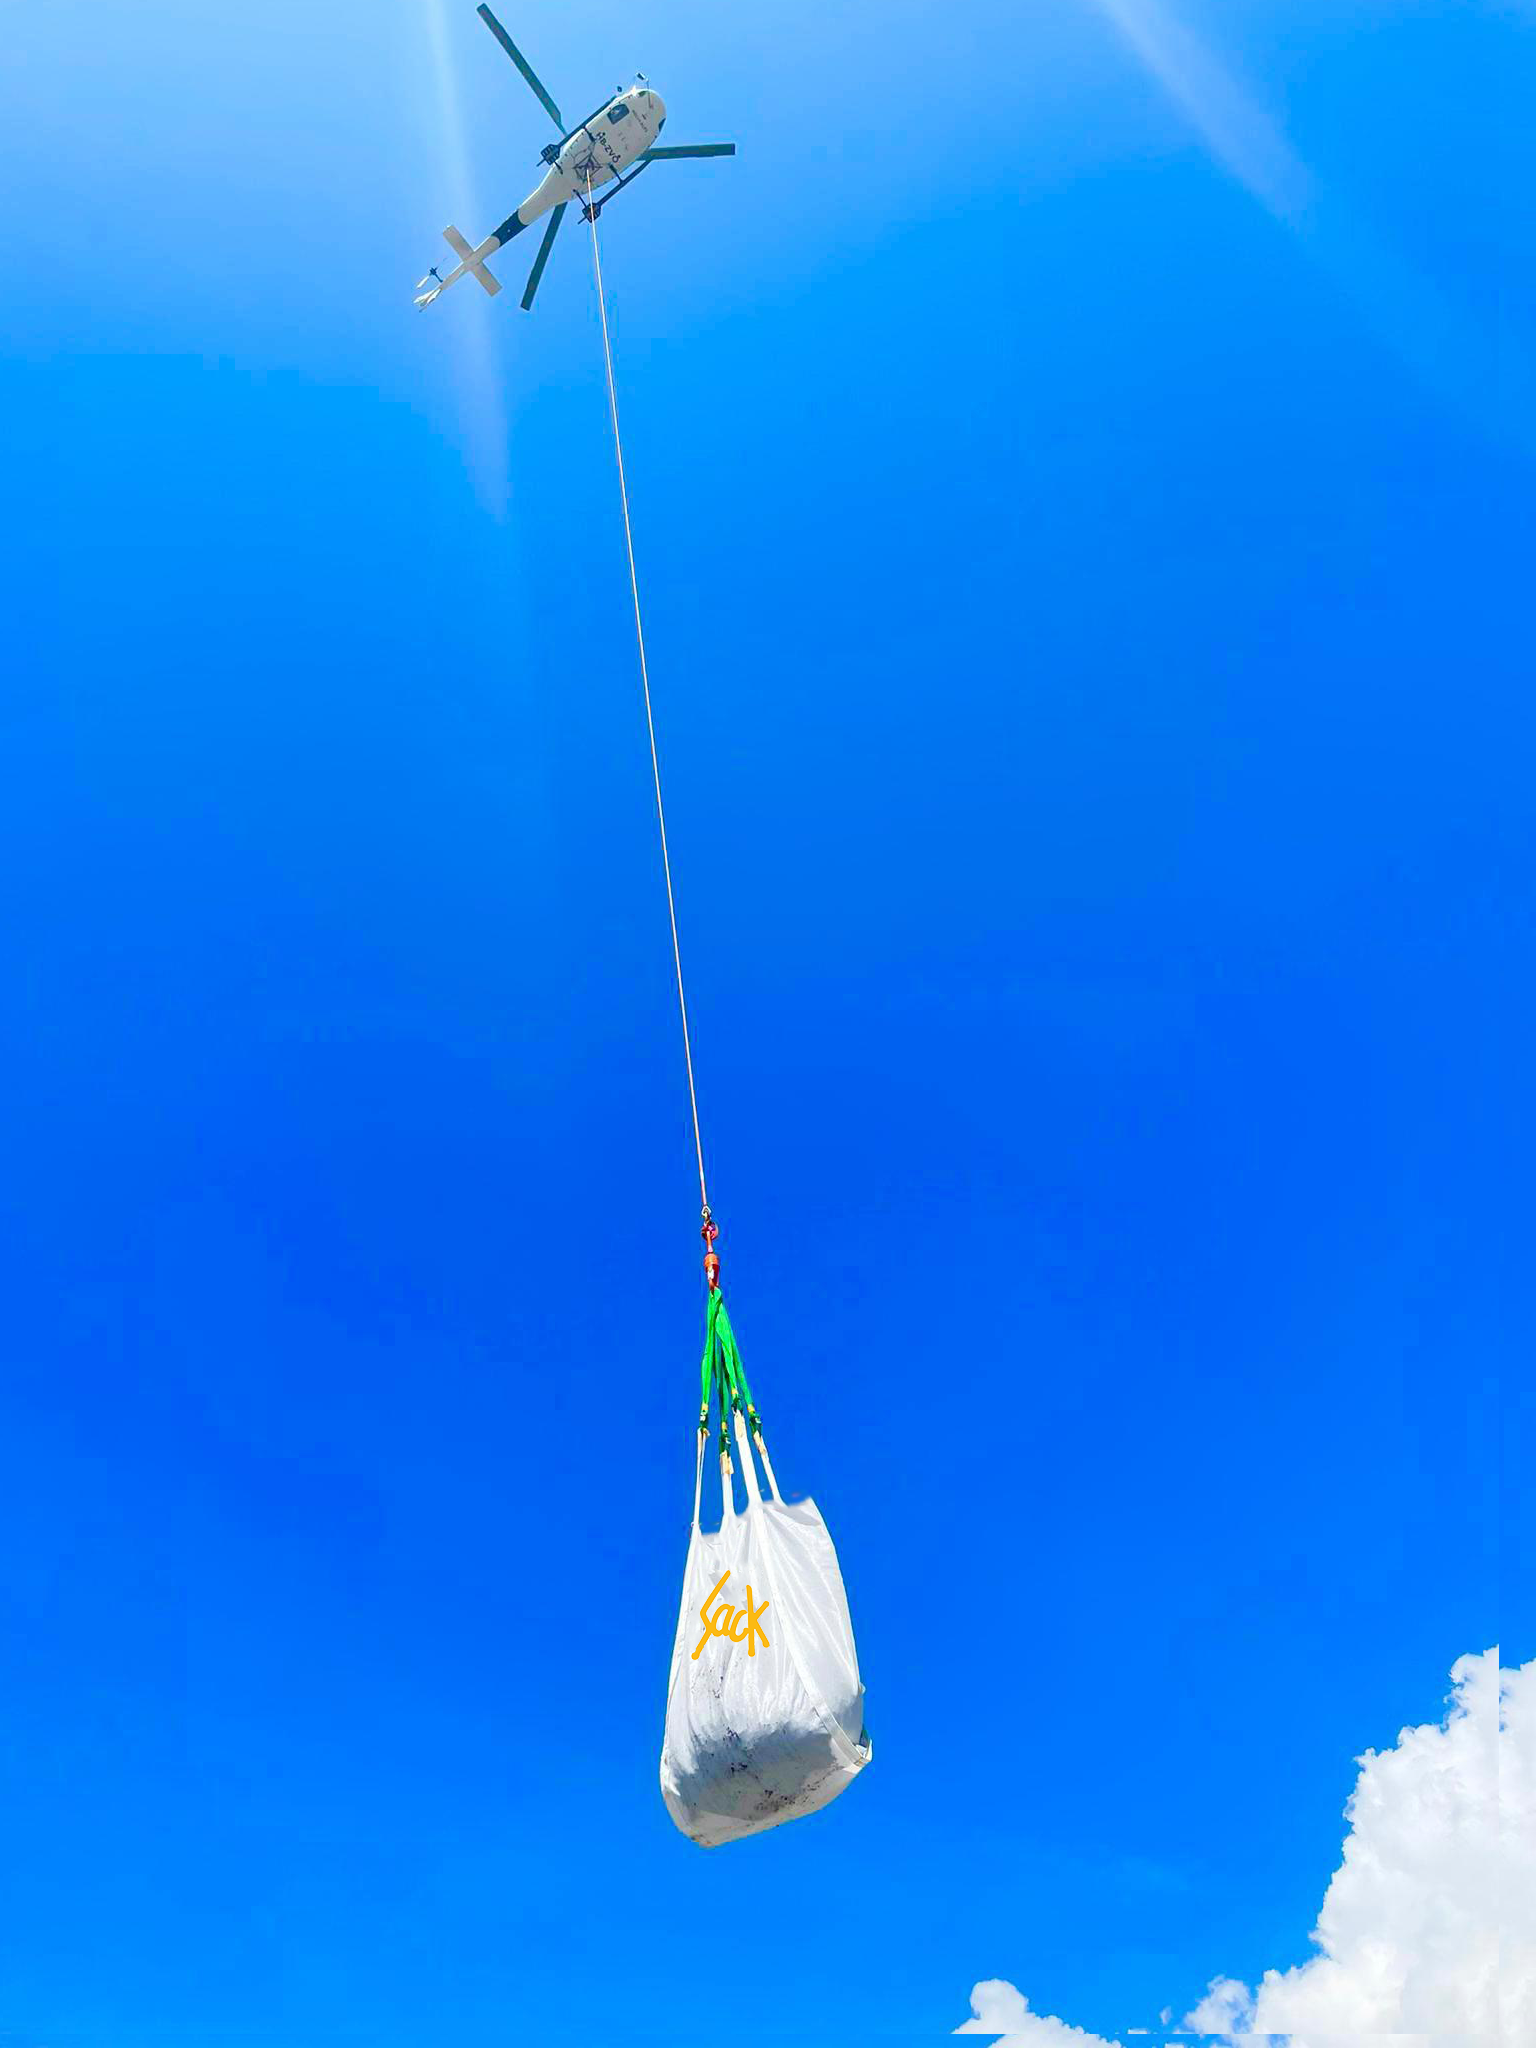 Bild eines Helisacks, welcher an einem Helikopter hängt